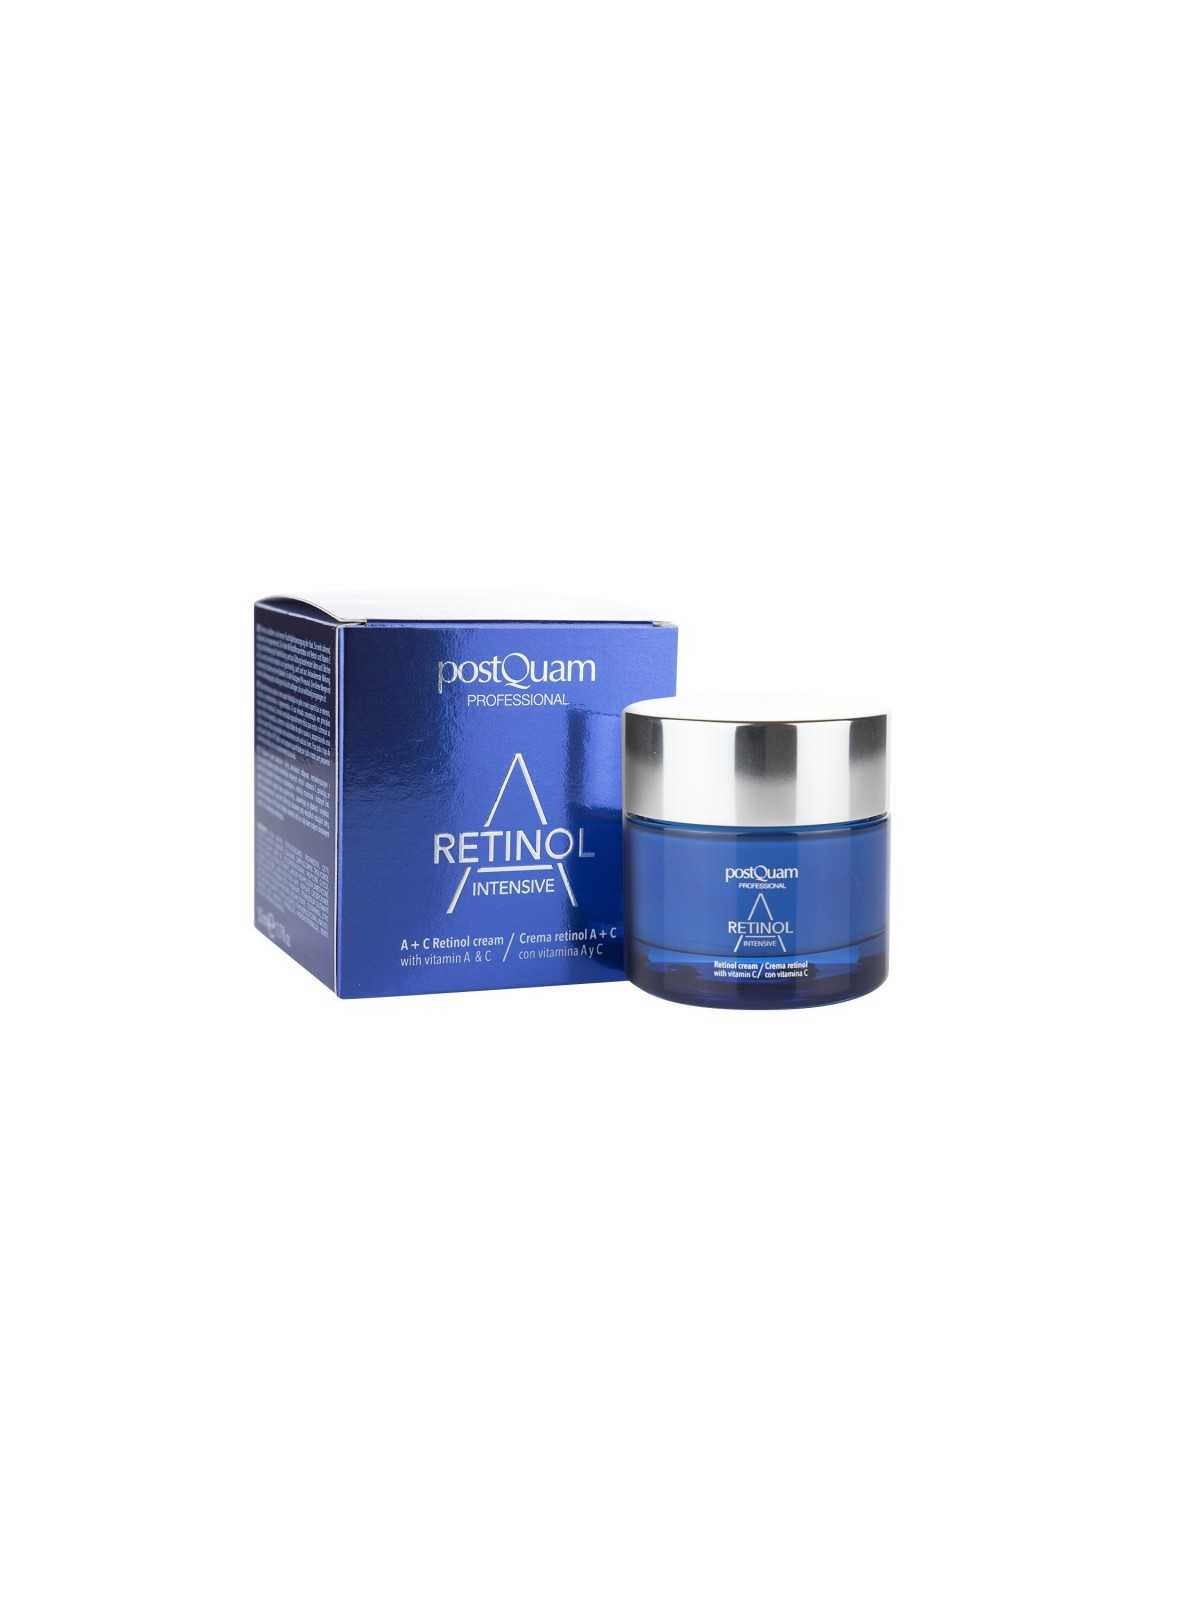 Comprar Crema Postquam antiedad 50ml. con principios activos Retinol y Vitamina E en Tratamiento facial por sólo 29,90 € o un precio específico de 29,90 € en Thalie Care